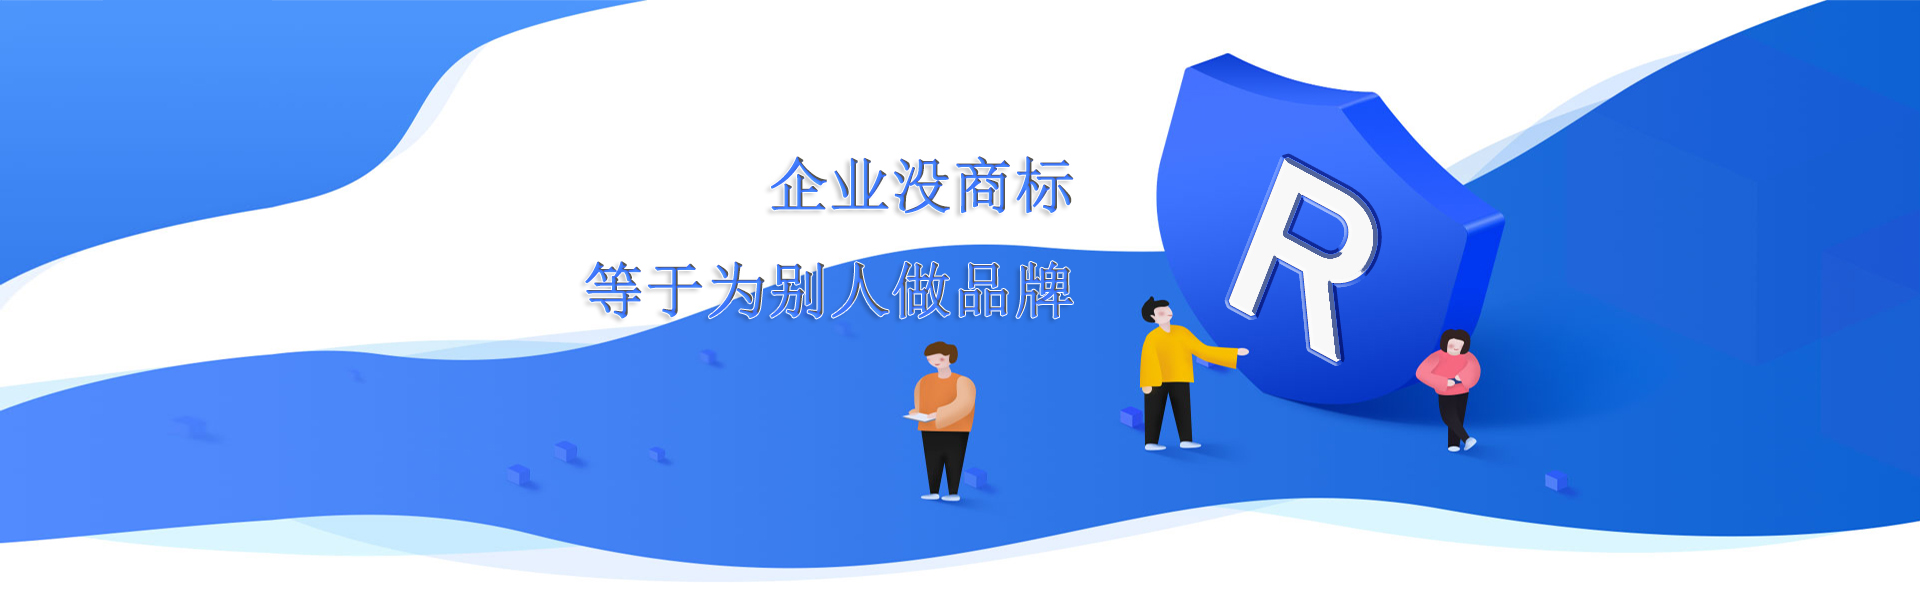 宇辰管理知识产权网站banner